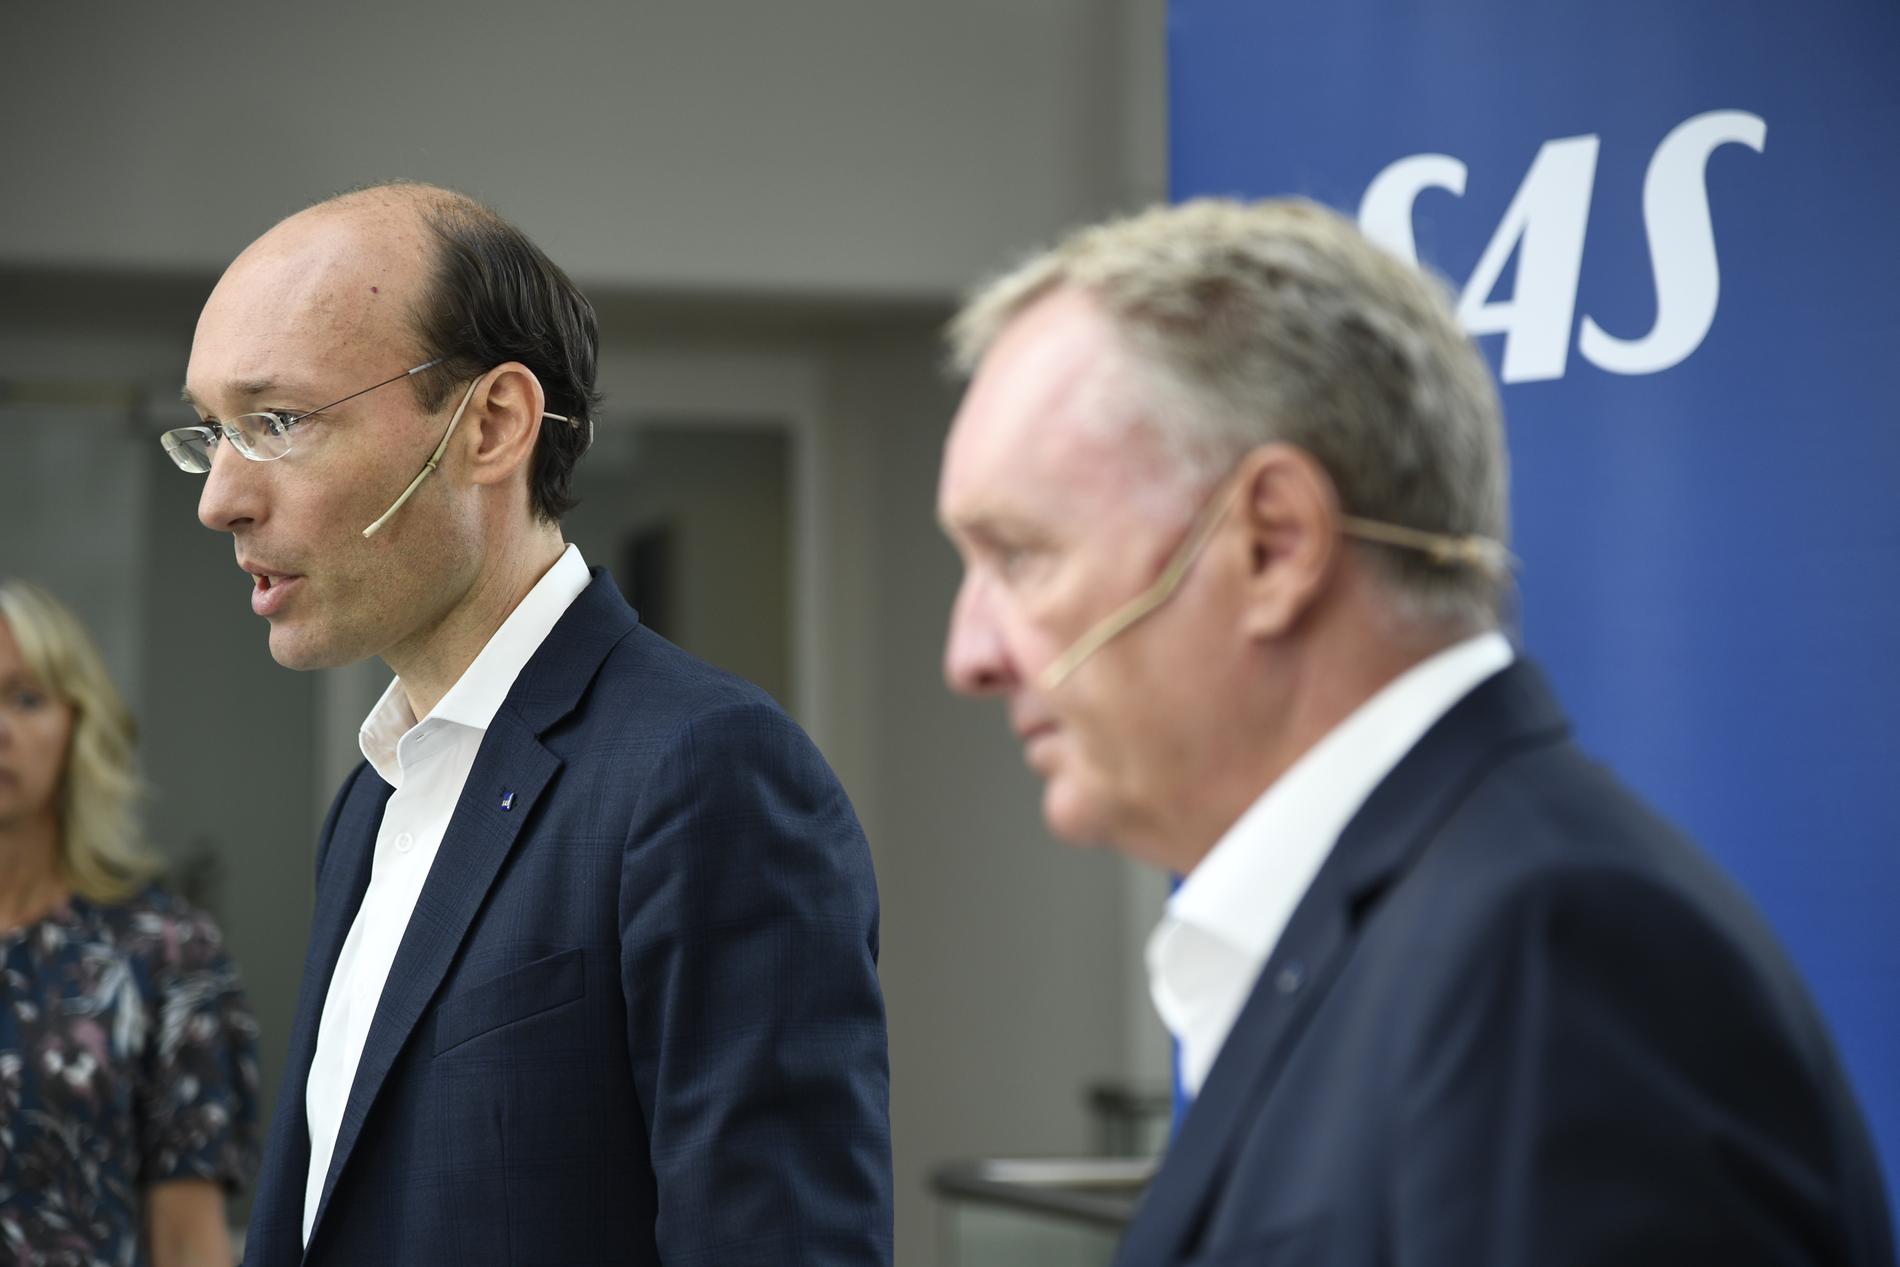 Anko van der Werff, VD och koncernchef för SAS, och Carsten Dilling styrelseordförande i SAS meddelar att bolaget ska ansöka om konkursskydd i USA den 5 juli.